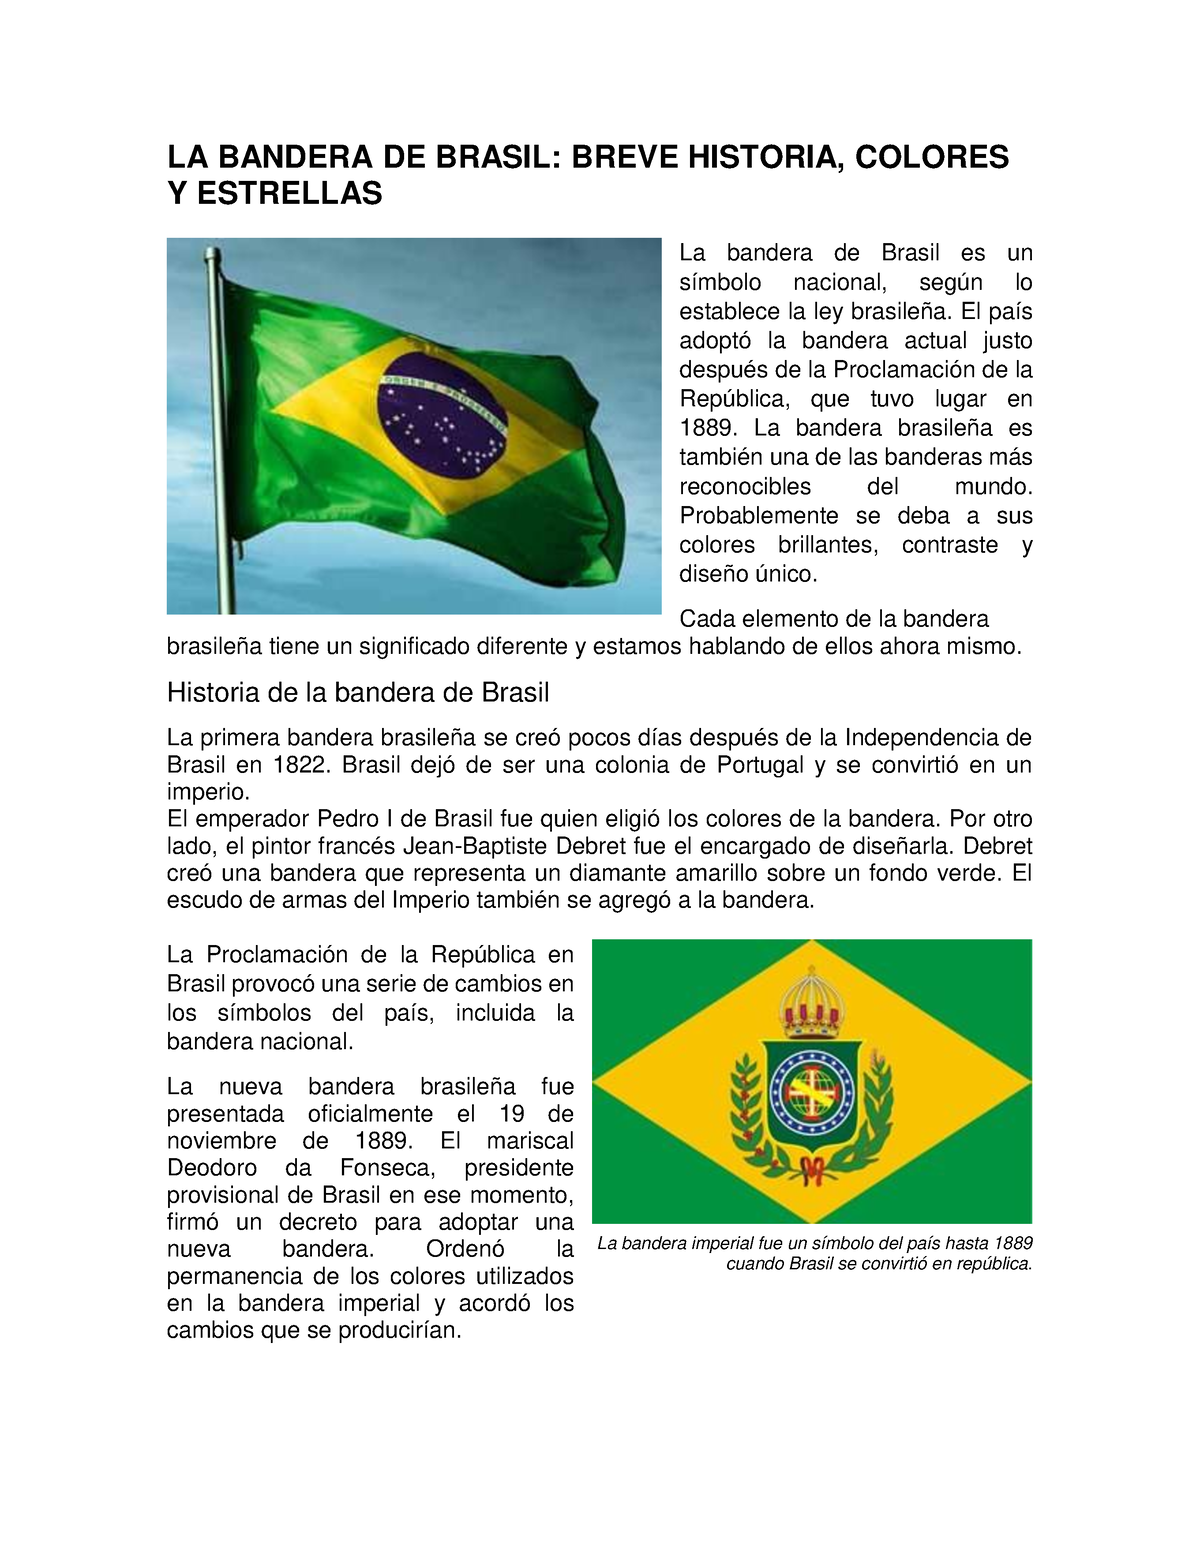 La bandera de Brasil: breve historia, colores y estrellas